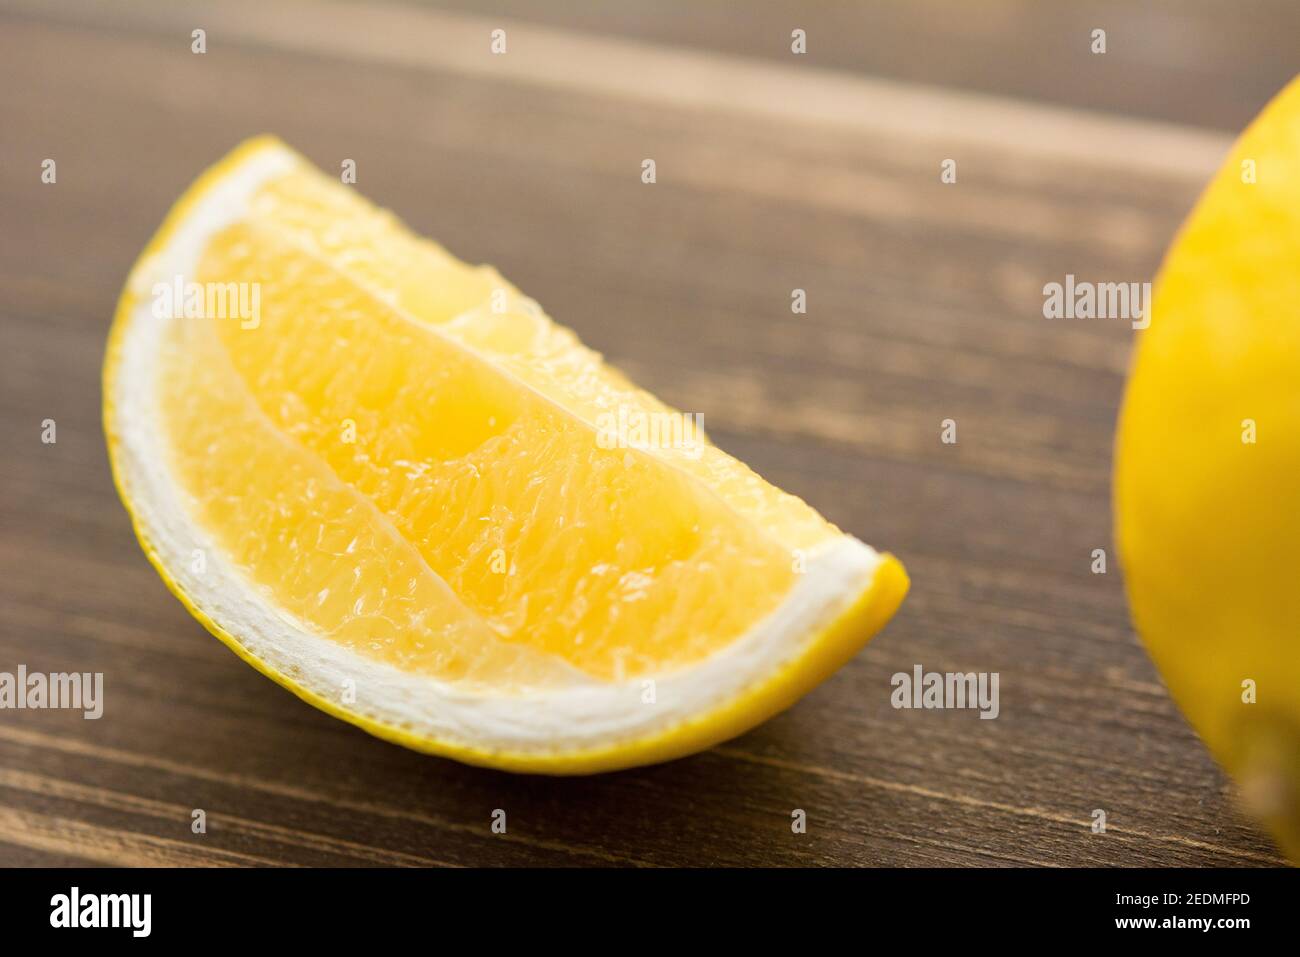 Keil von frischen saftigen reifen gelben Zitrone auf Holztisch, geschlossen Schuss Stockfoto